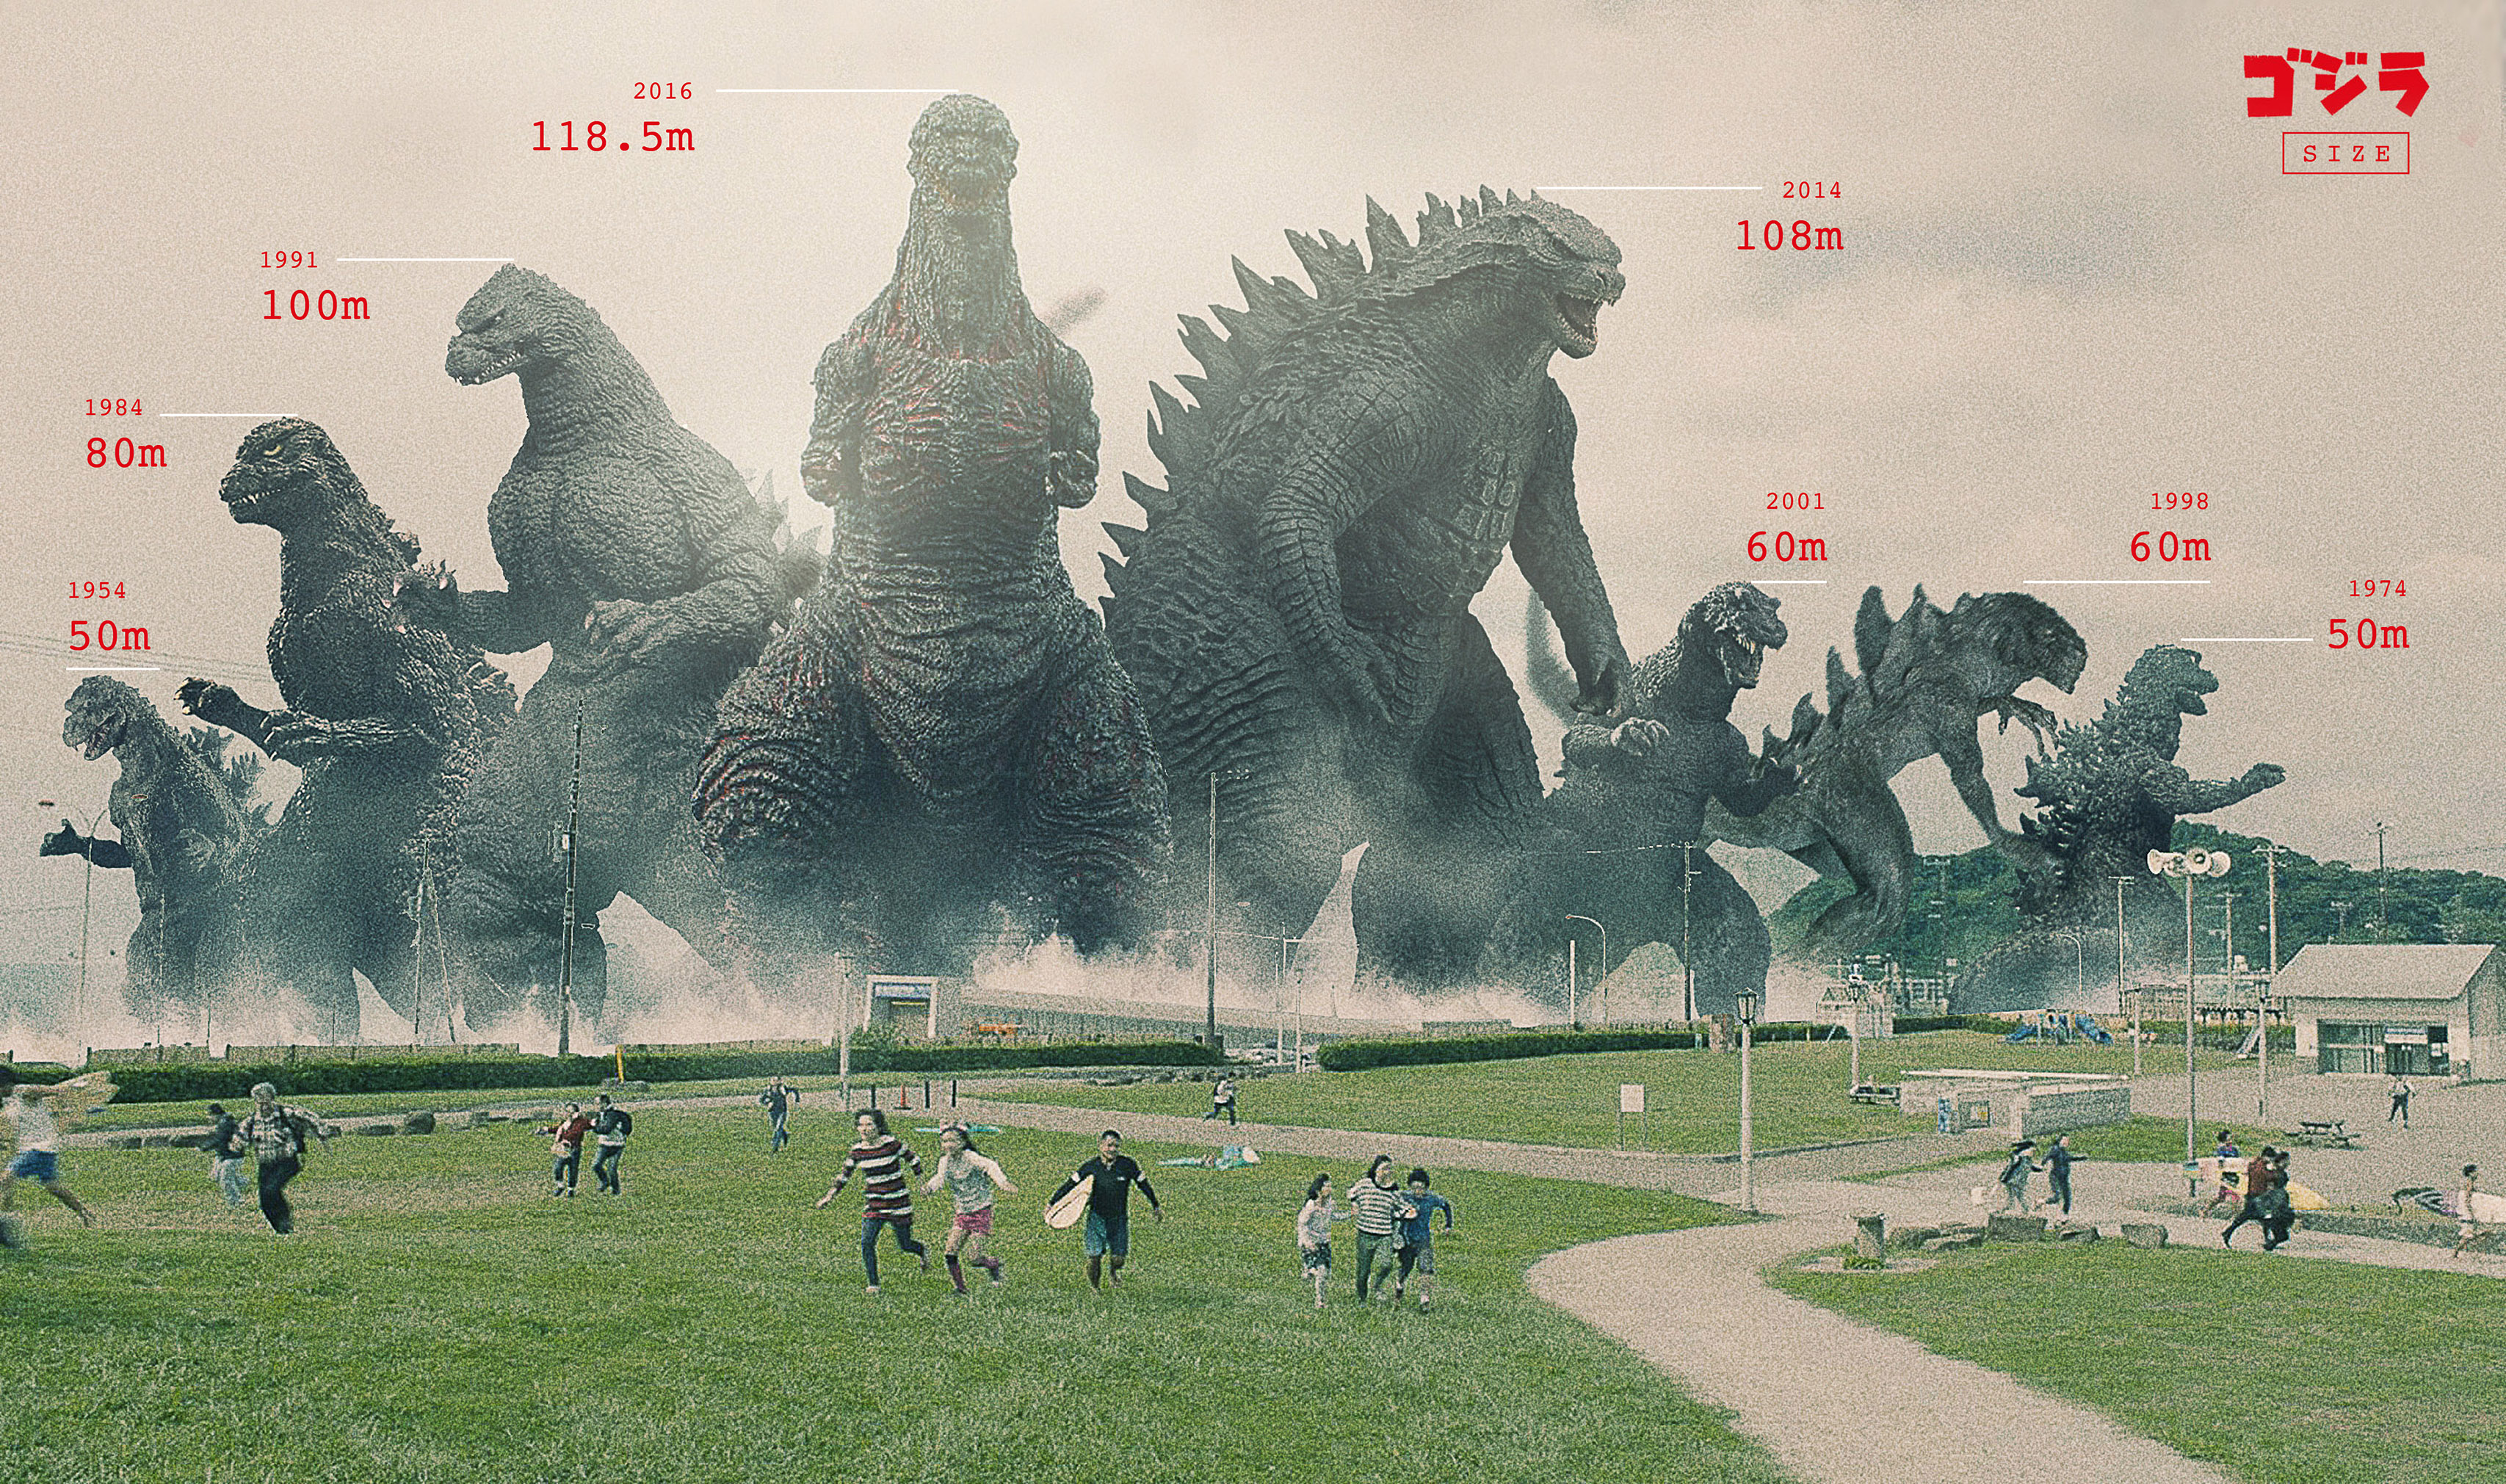 Godzilla size